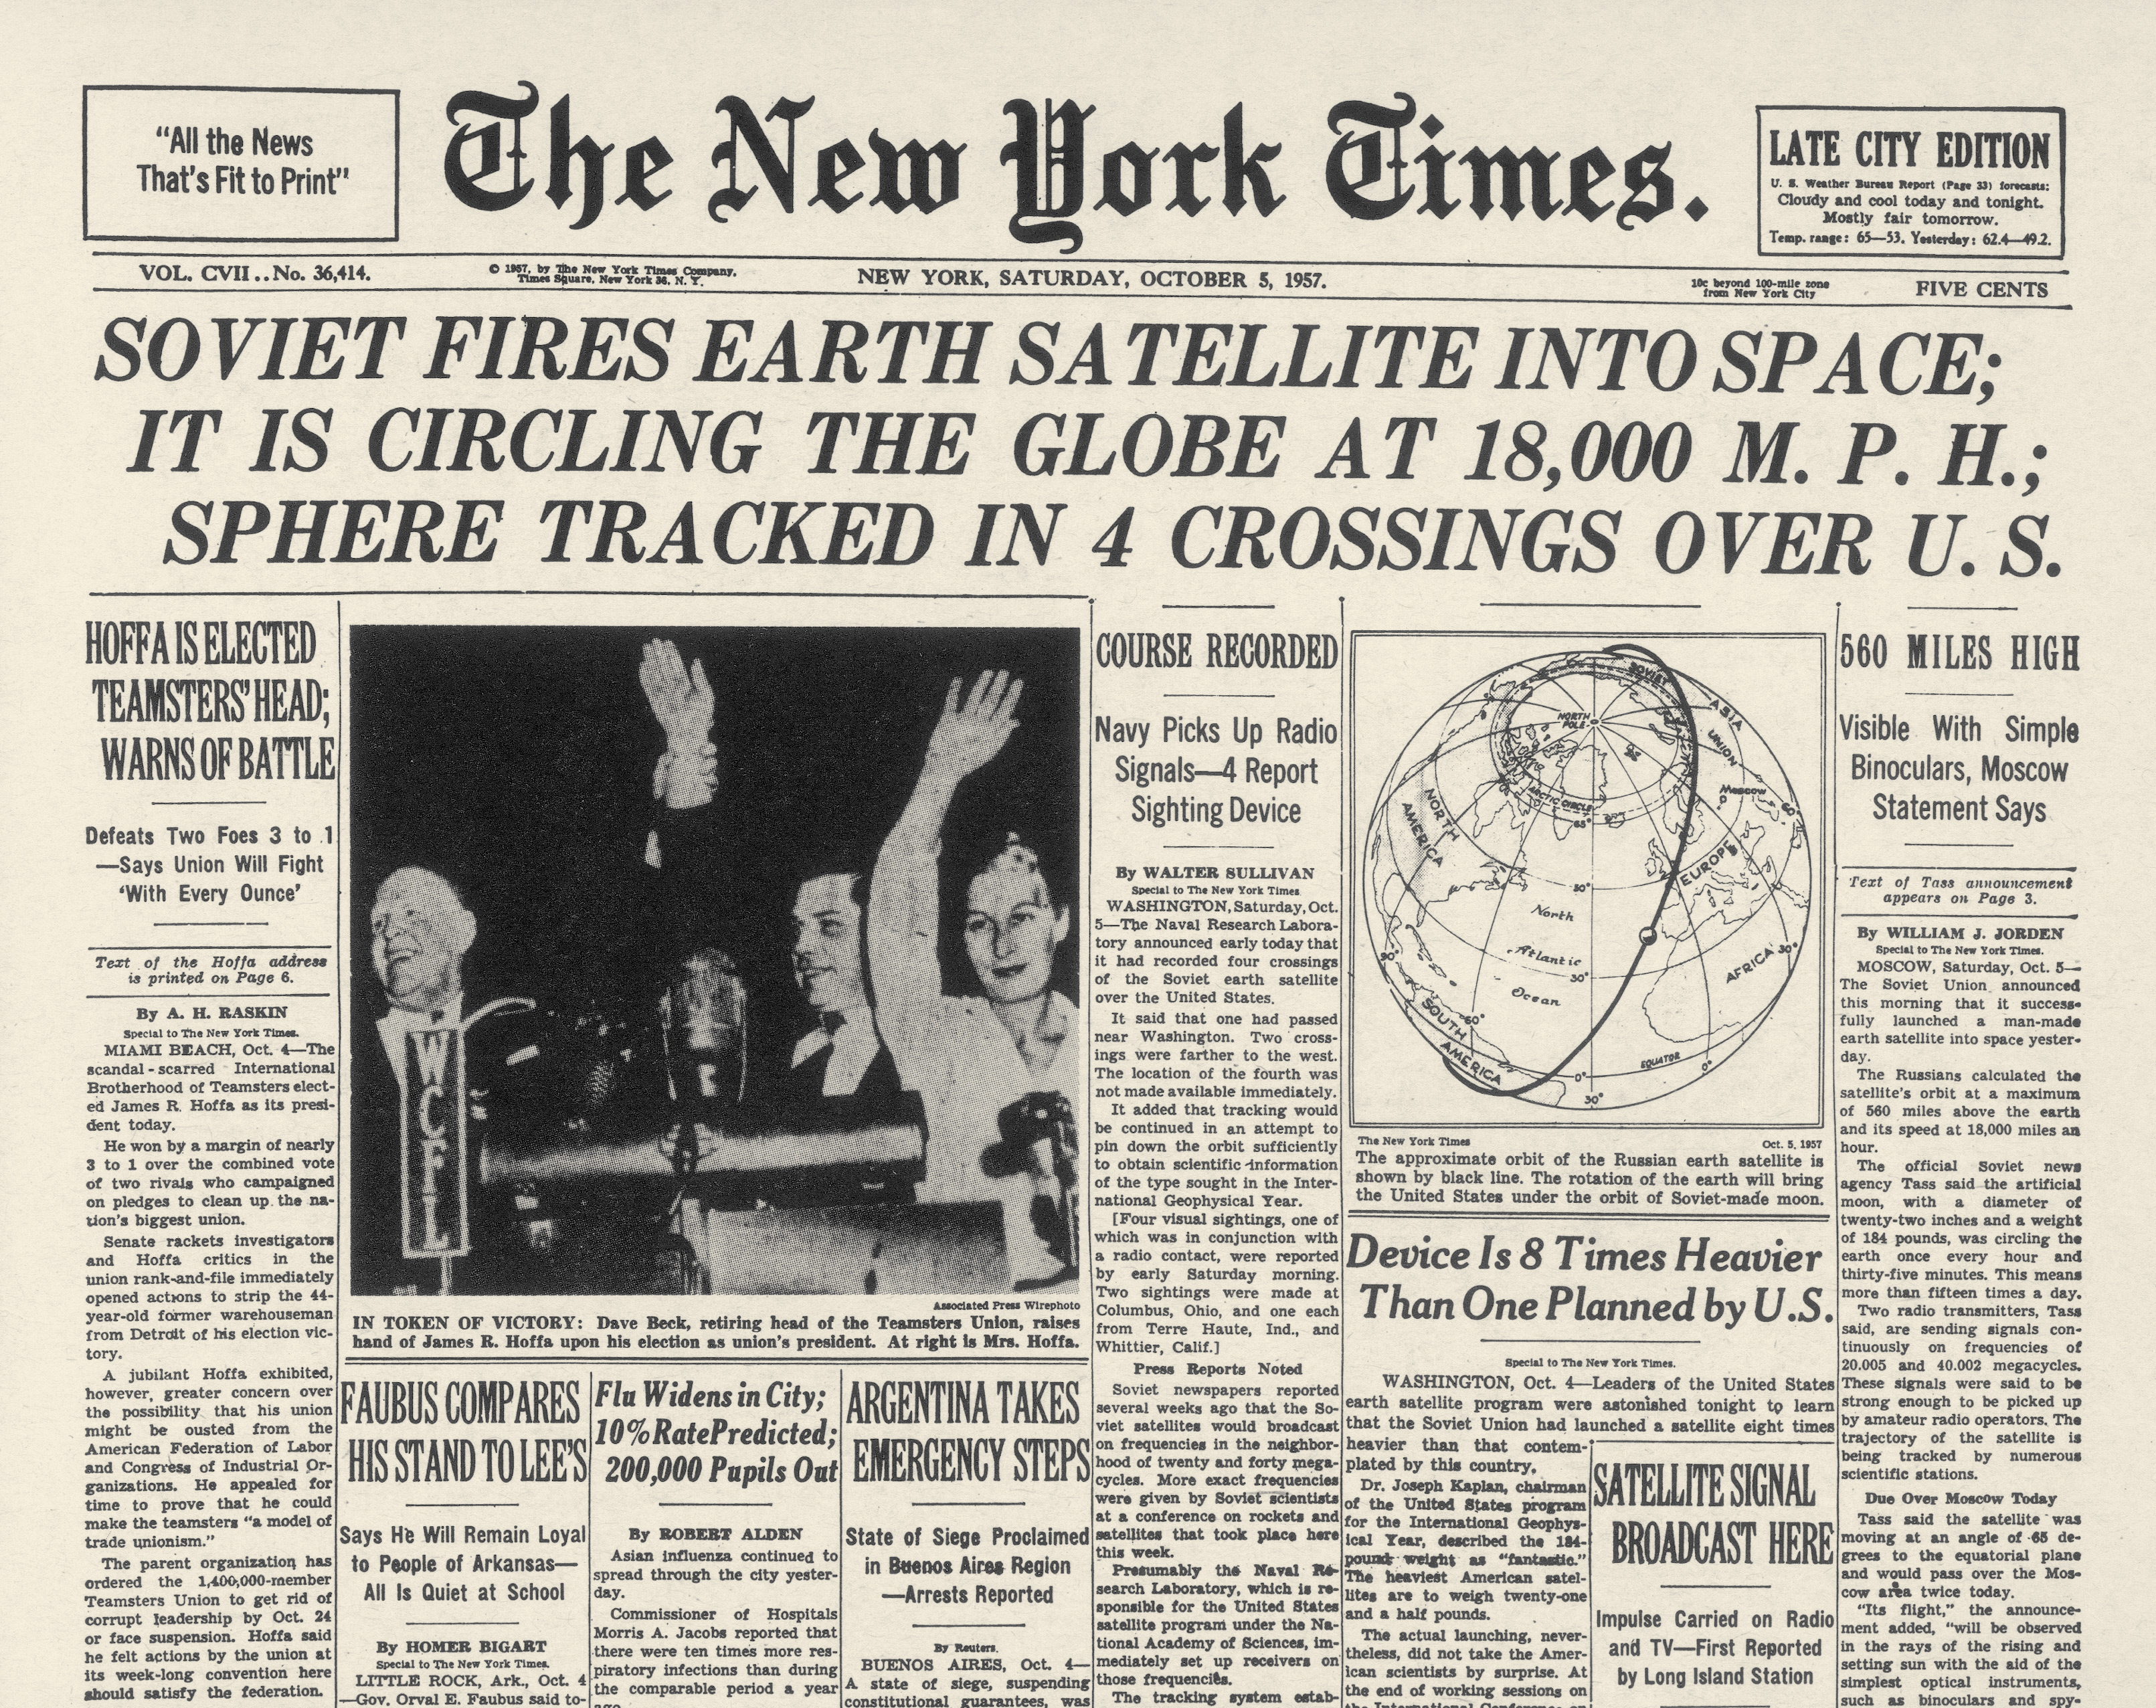 La première page du journal New York Times, 5 octobre 1957